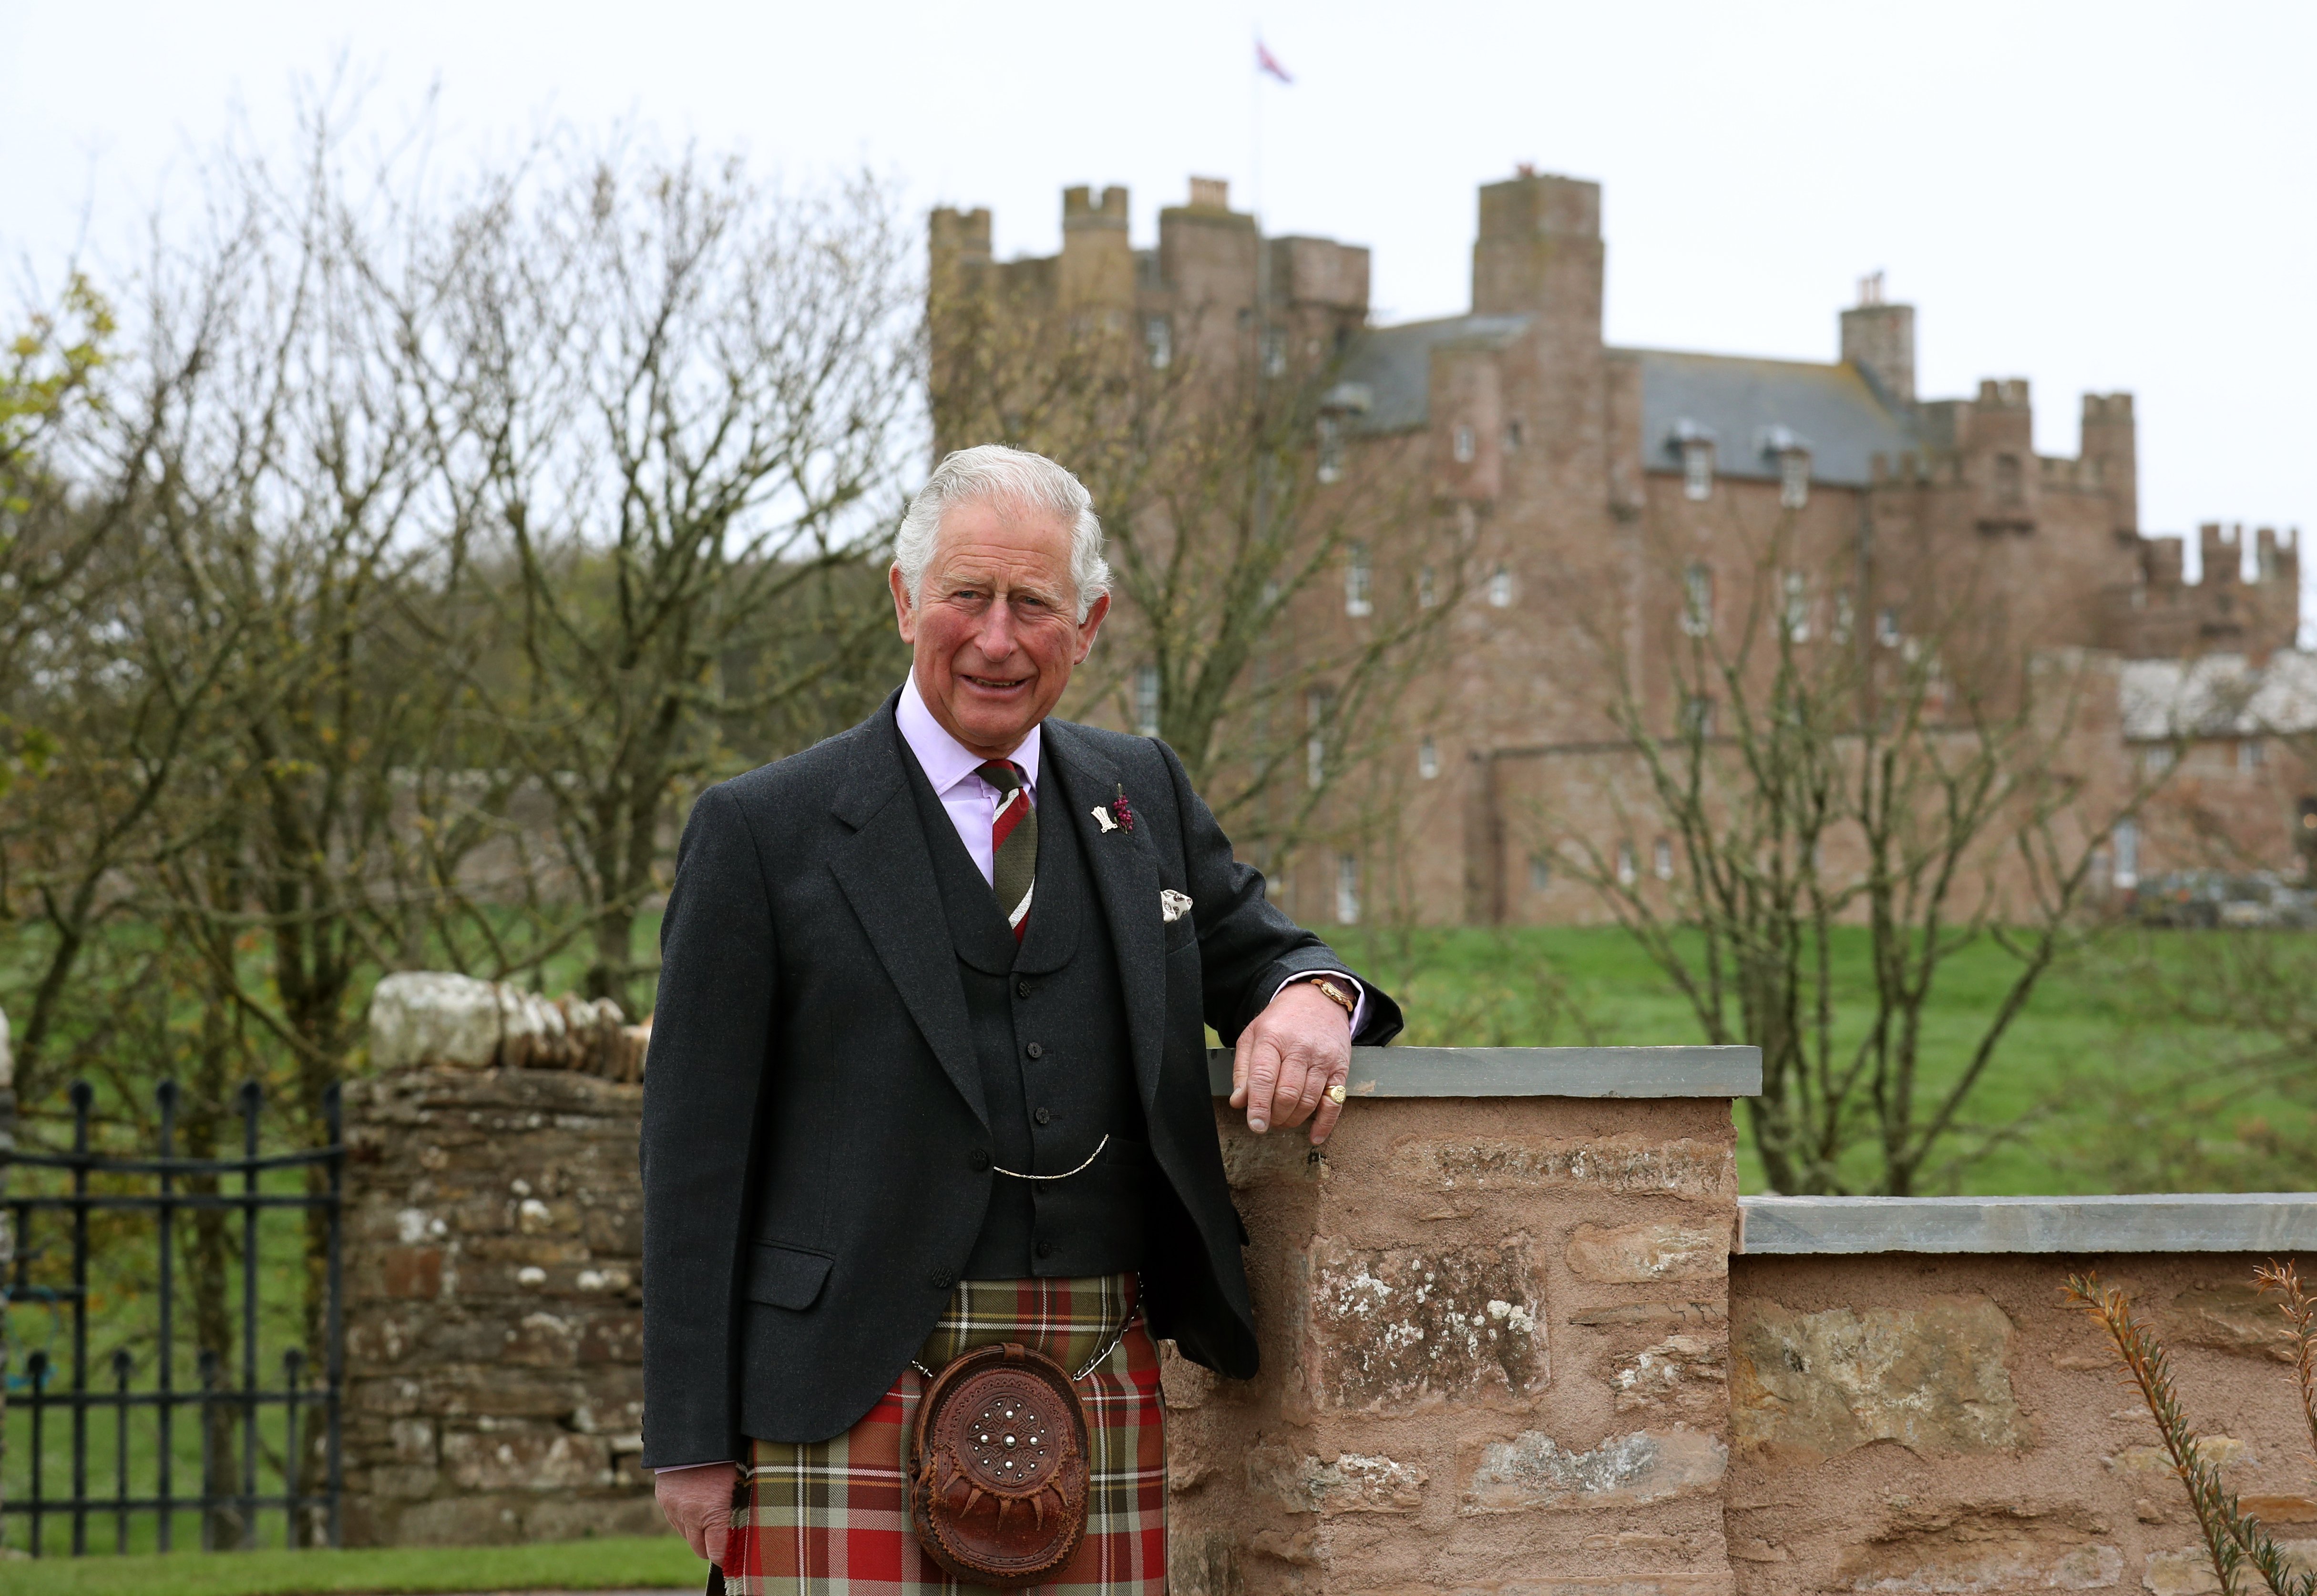 Le prince Charles pose pour une photo devant le château de Mey après avoir officiellement ouvert le logement du grenier le 1er mai 2019. | Source : Getty Images